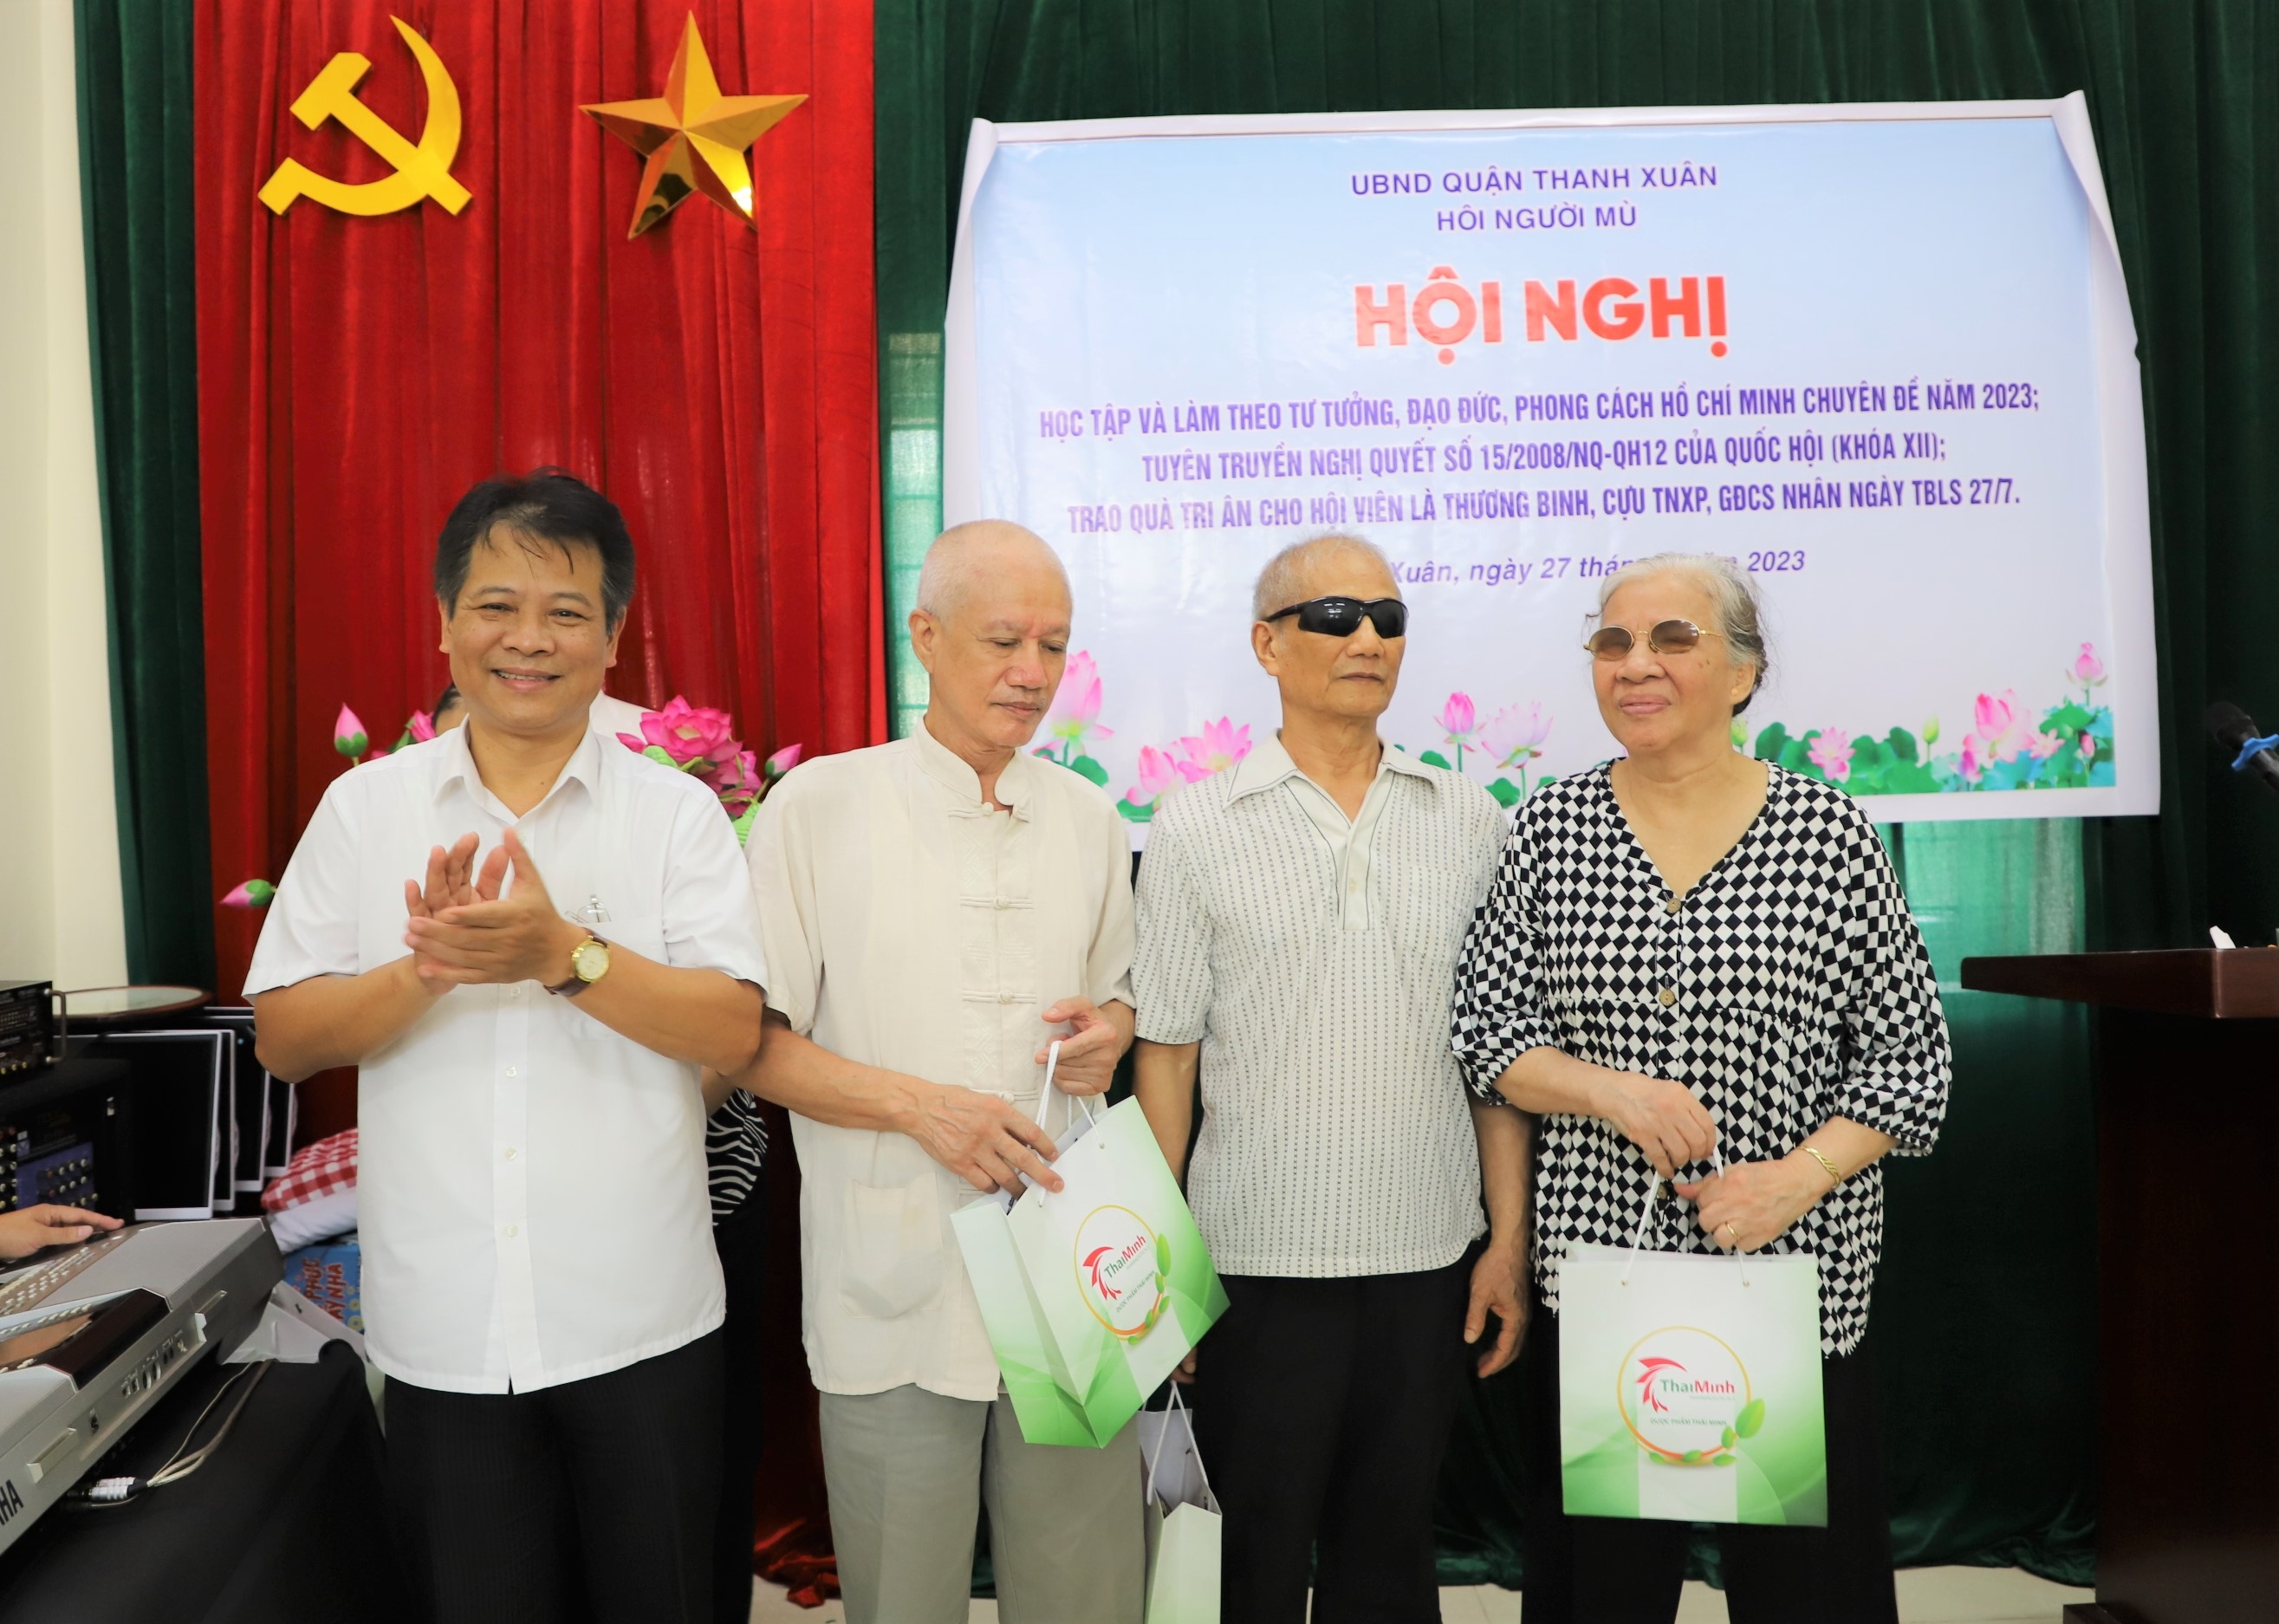 Hội người mù quận Thanh Xuân tổ chức Hội nghị học tập và làm theo tư tưởng, đạo đức, phong cách Hồ Chí Minh